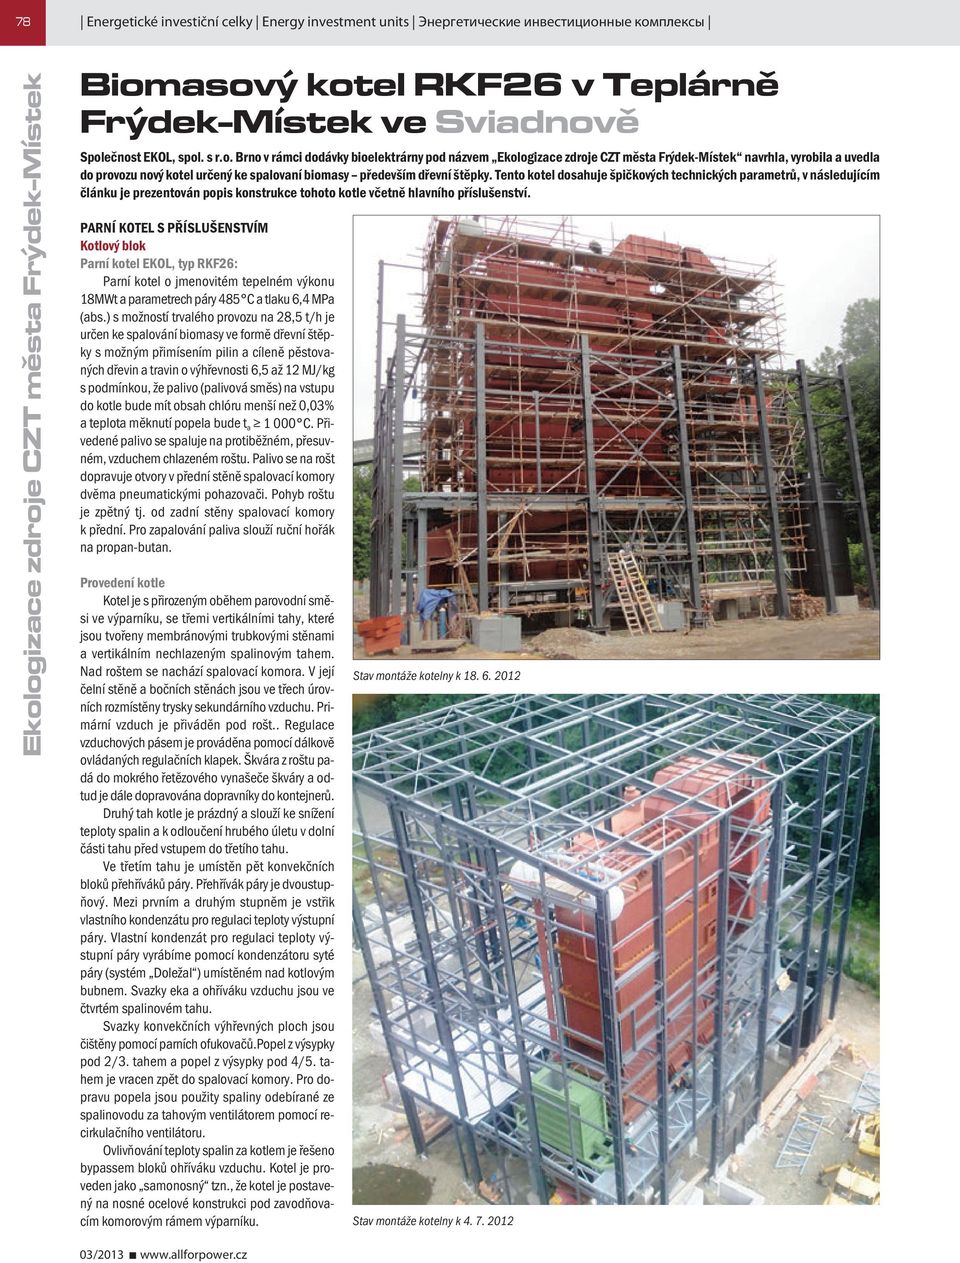 Biomasový kotel RKF26 v Teplárně Frýdek-Místek ve Sviadnově - PDF Stažení  zdarma